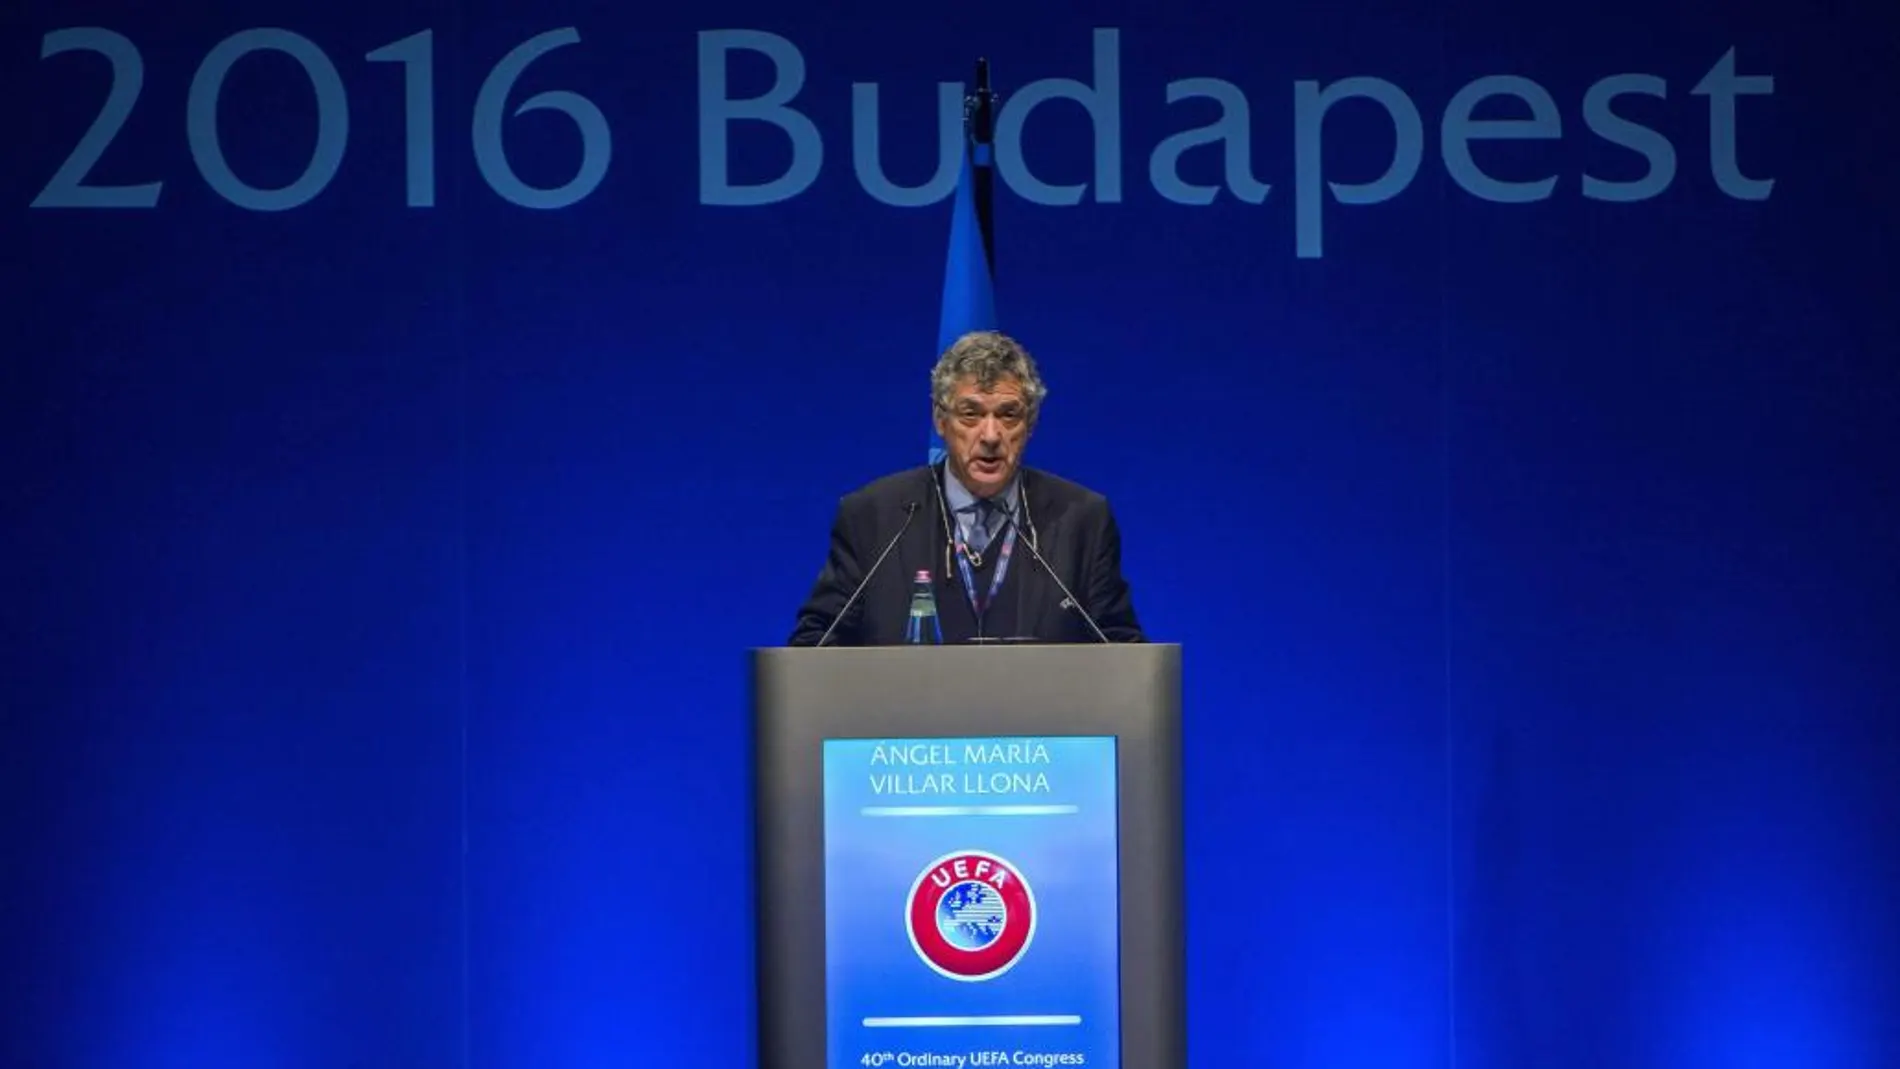 El presidente interino de la UEFA y presidente de la Federación Española, Ángel María Villar, pronuncia un discurso durante el 40 Congreso Ordinario de la UEFA celebrado en Budapest, Hungría